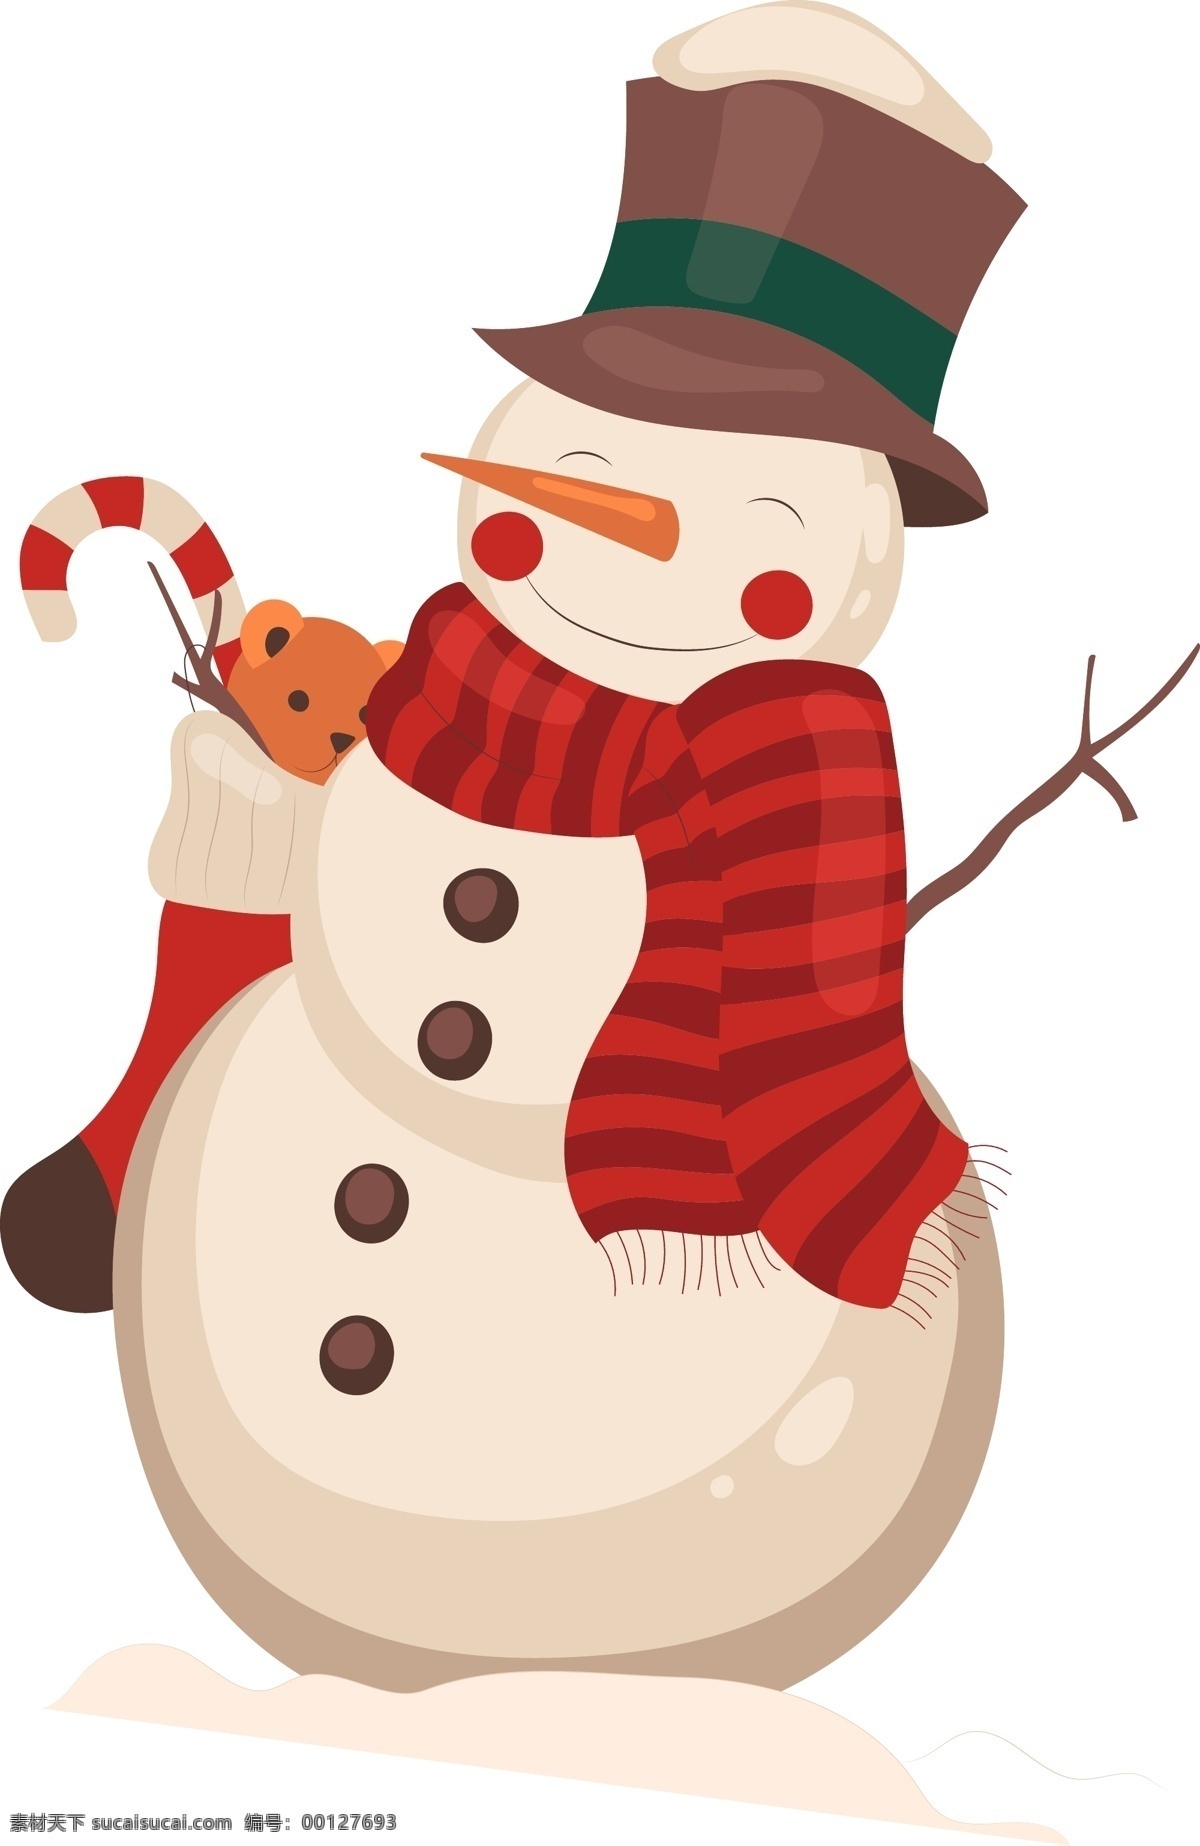 雪人矢量图 雪人 卡通 平面设计 冬天 围巾 手杖 圣诞 矢量